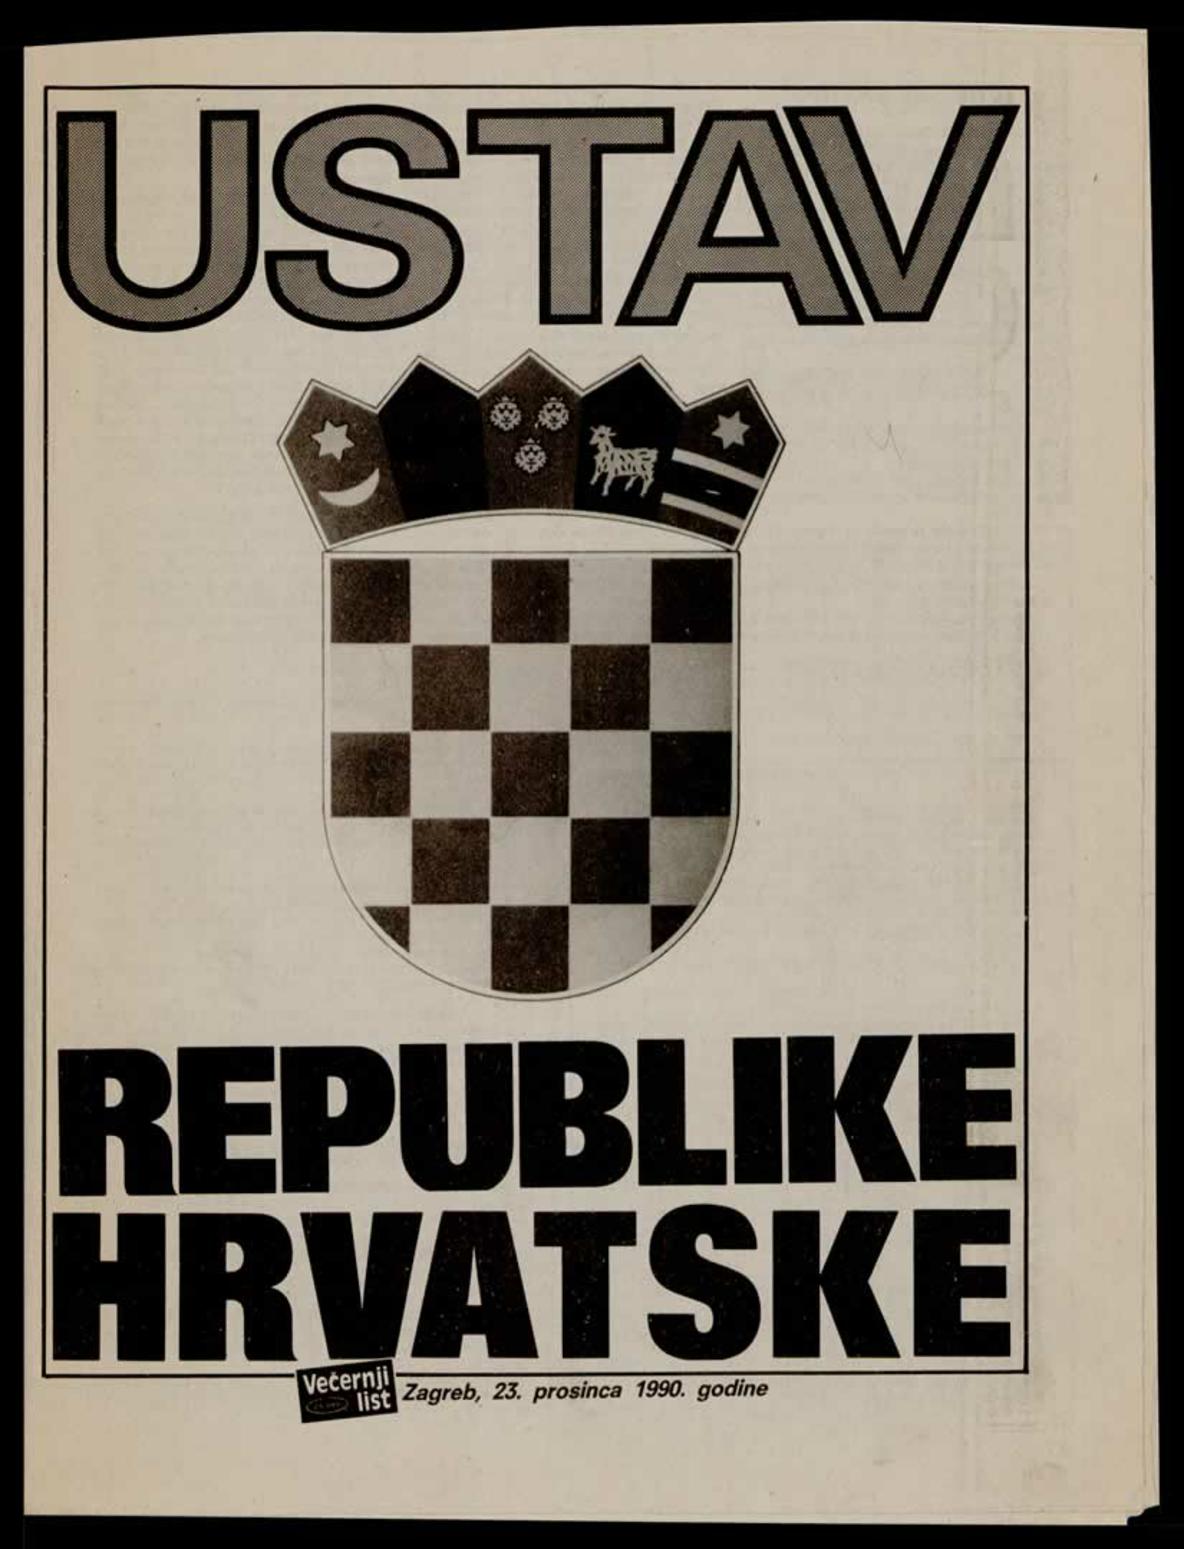 <b>Ustav Republike Hrvatske</b>, prilog <i>Večernjem listu</i>, 23. prosinca 1990.<br><br>
HR-HDA-2031. Vjesnik. Unutarnja politika, kut. 887
